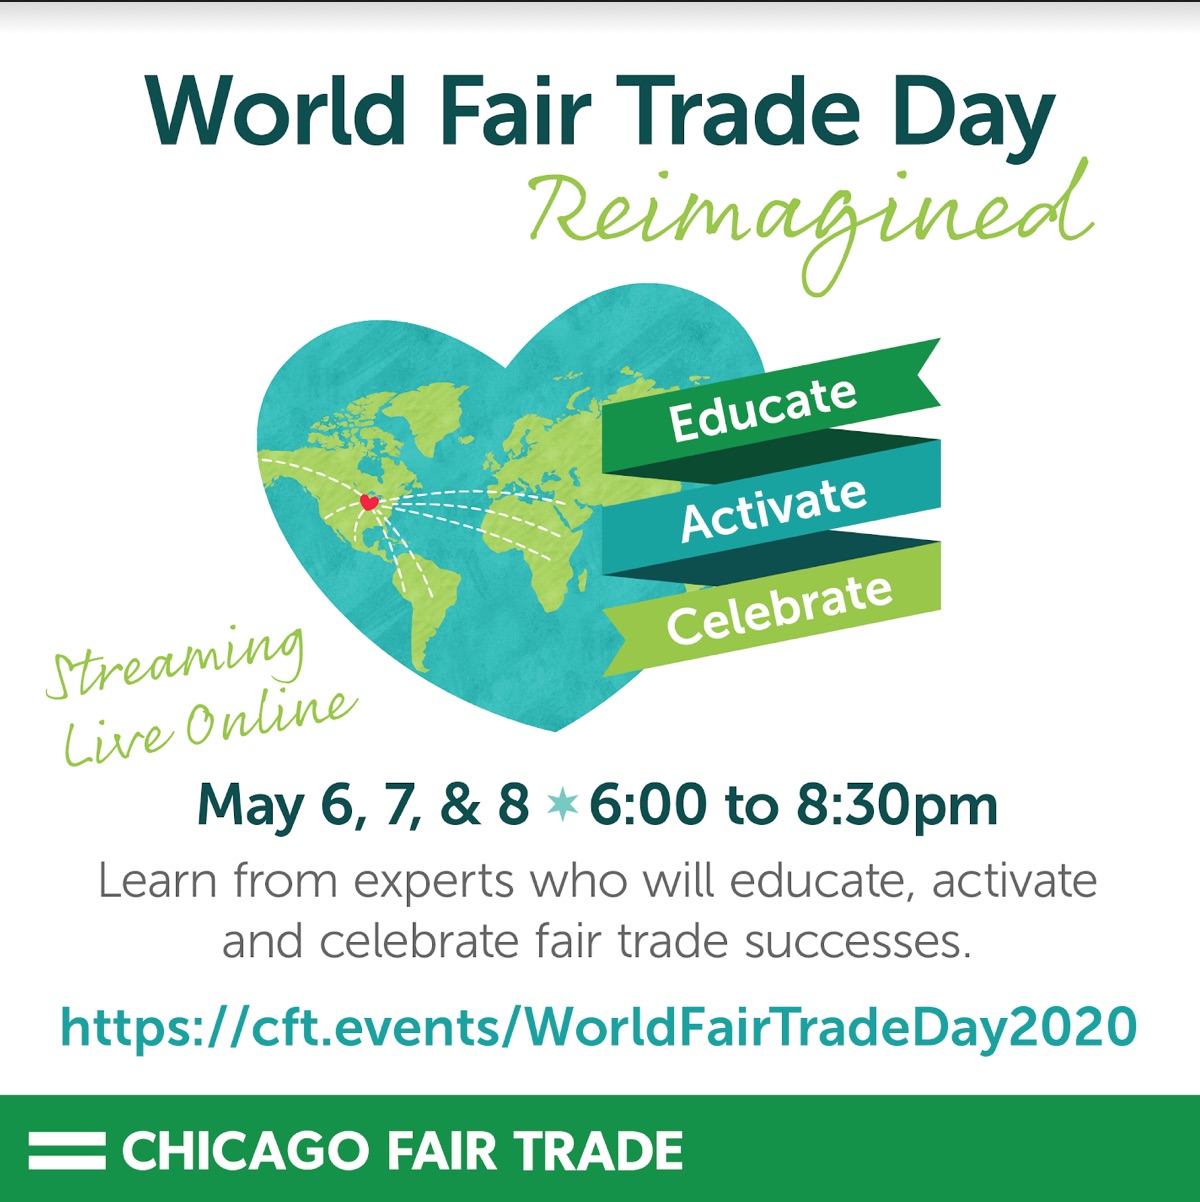 Chicago Fair Trade · Educate, Activate, Celebrate